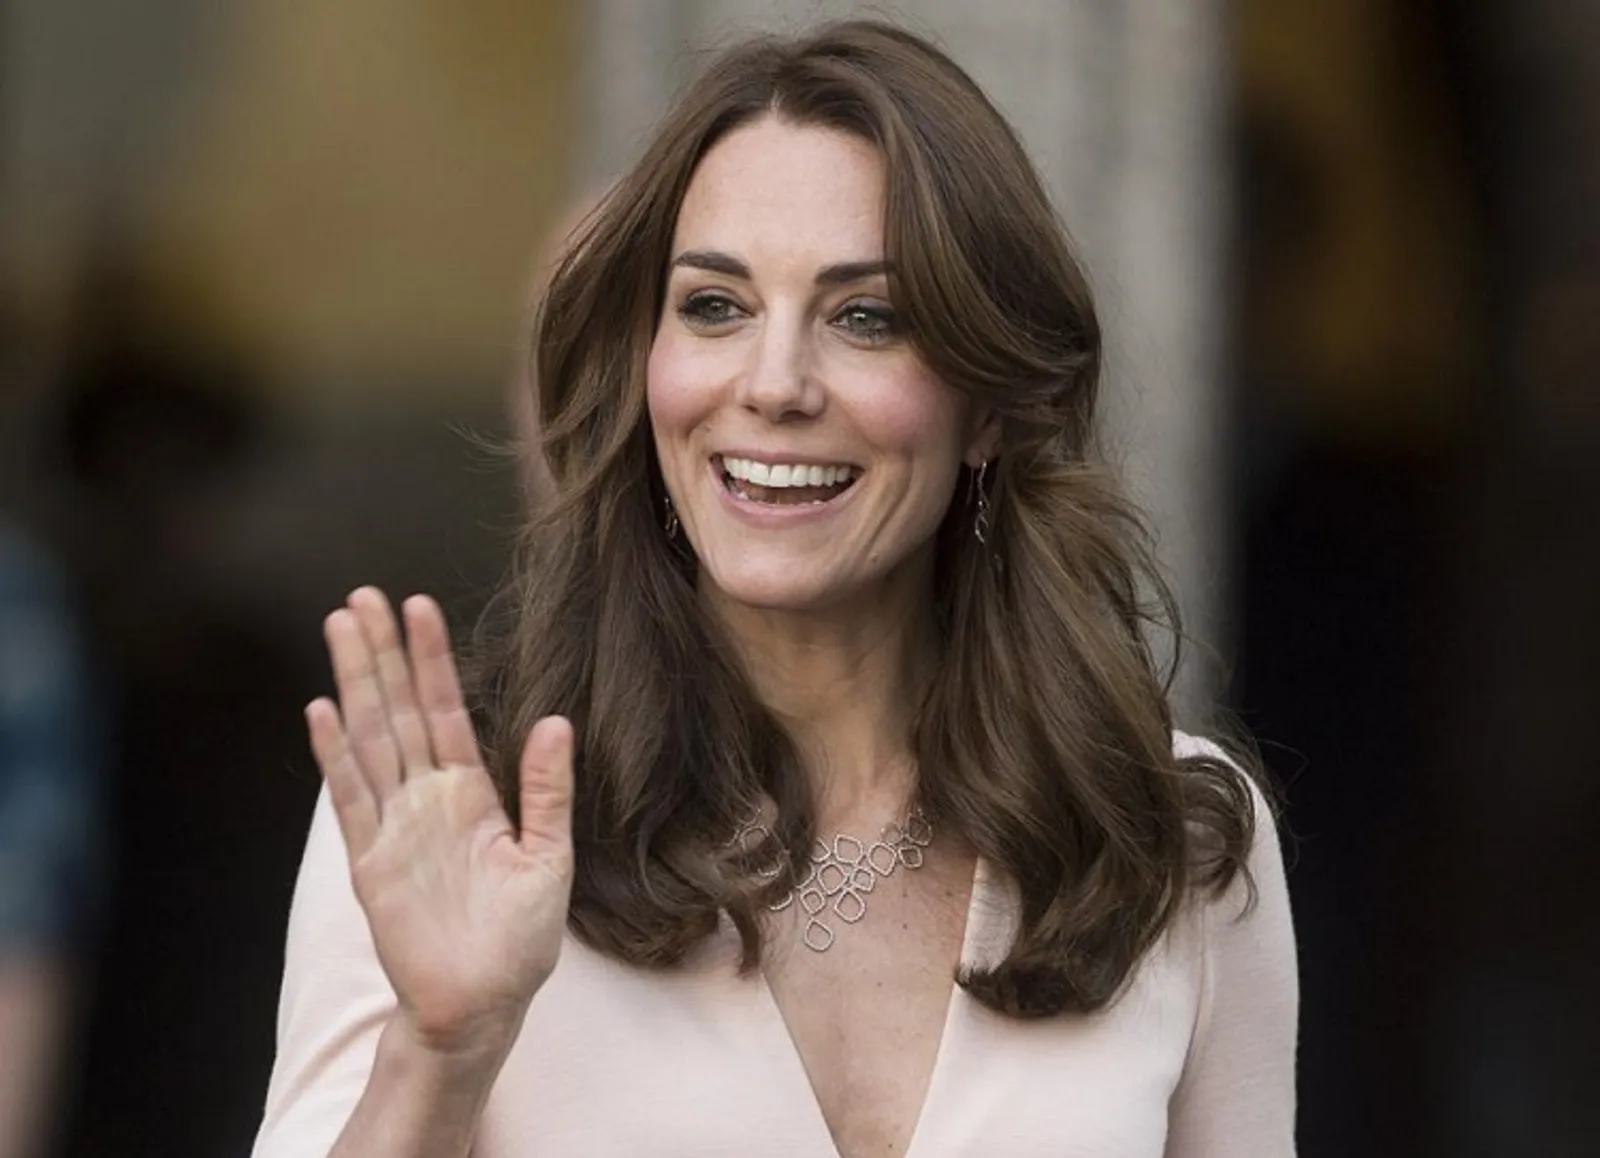 Foto Topless Kate Middleton Disebar, Majalah Ini Kena Denda Miliaran Rupiah 